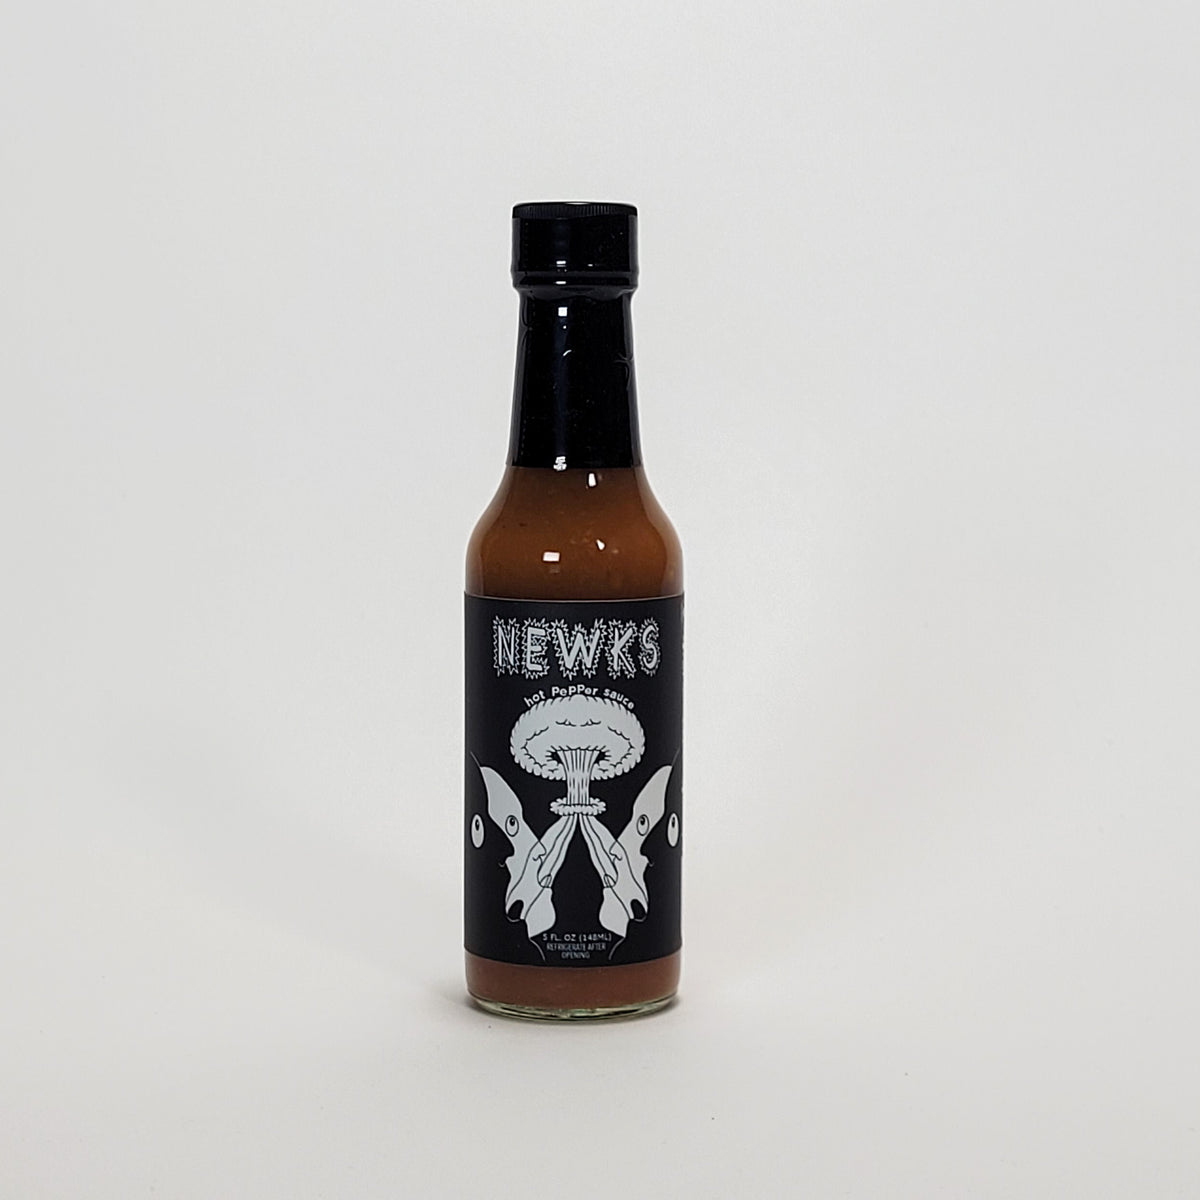 Newks Hot Pepper Sauce hot sauce